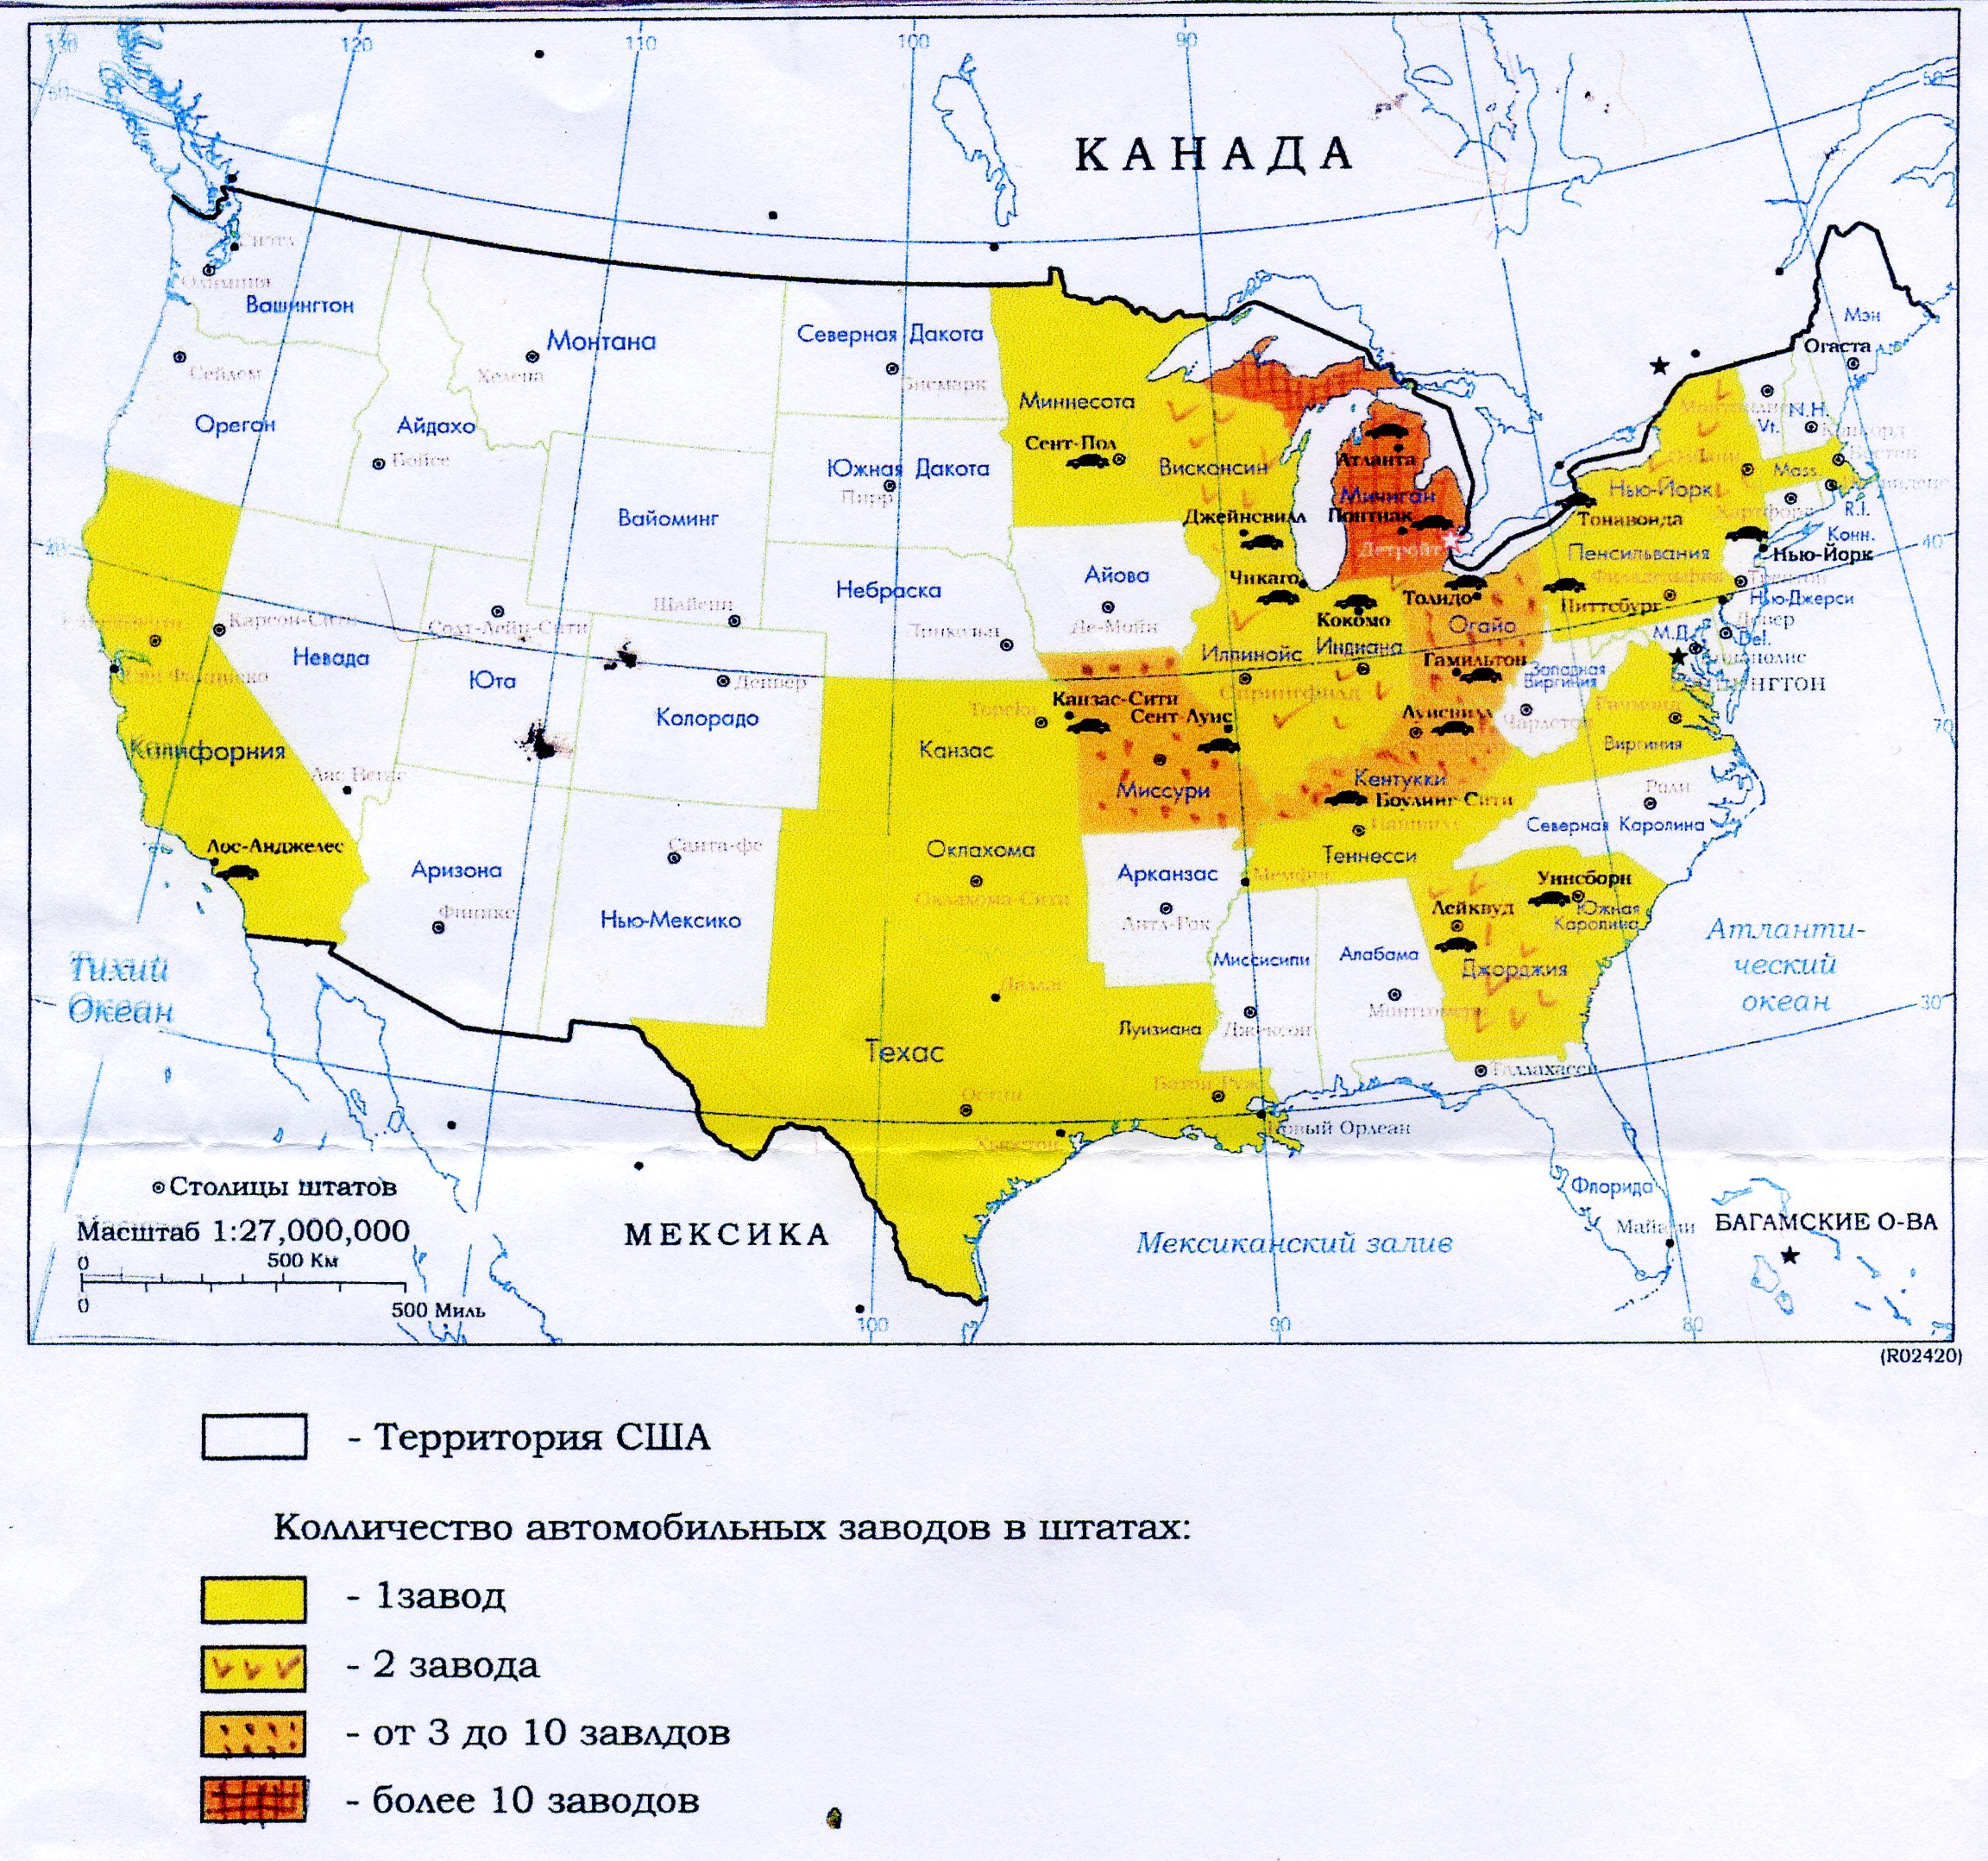 Главные сельскохозяйственные районы сша. Промышленность США карта. Районы США на карте. Автомобильная промышленность США карта. Автомобилестроение США карта.